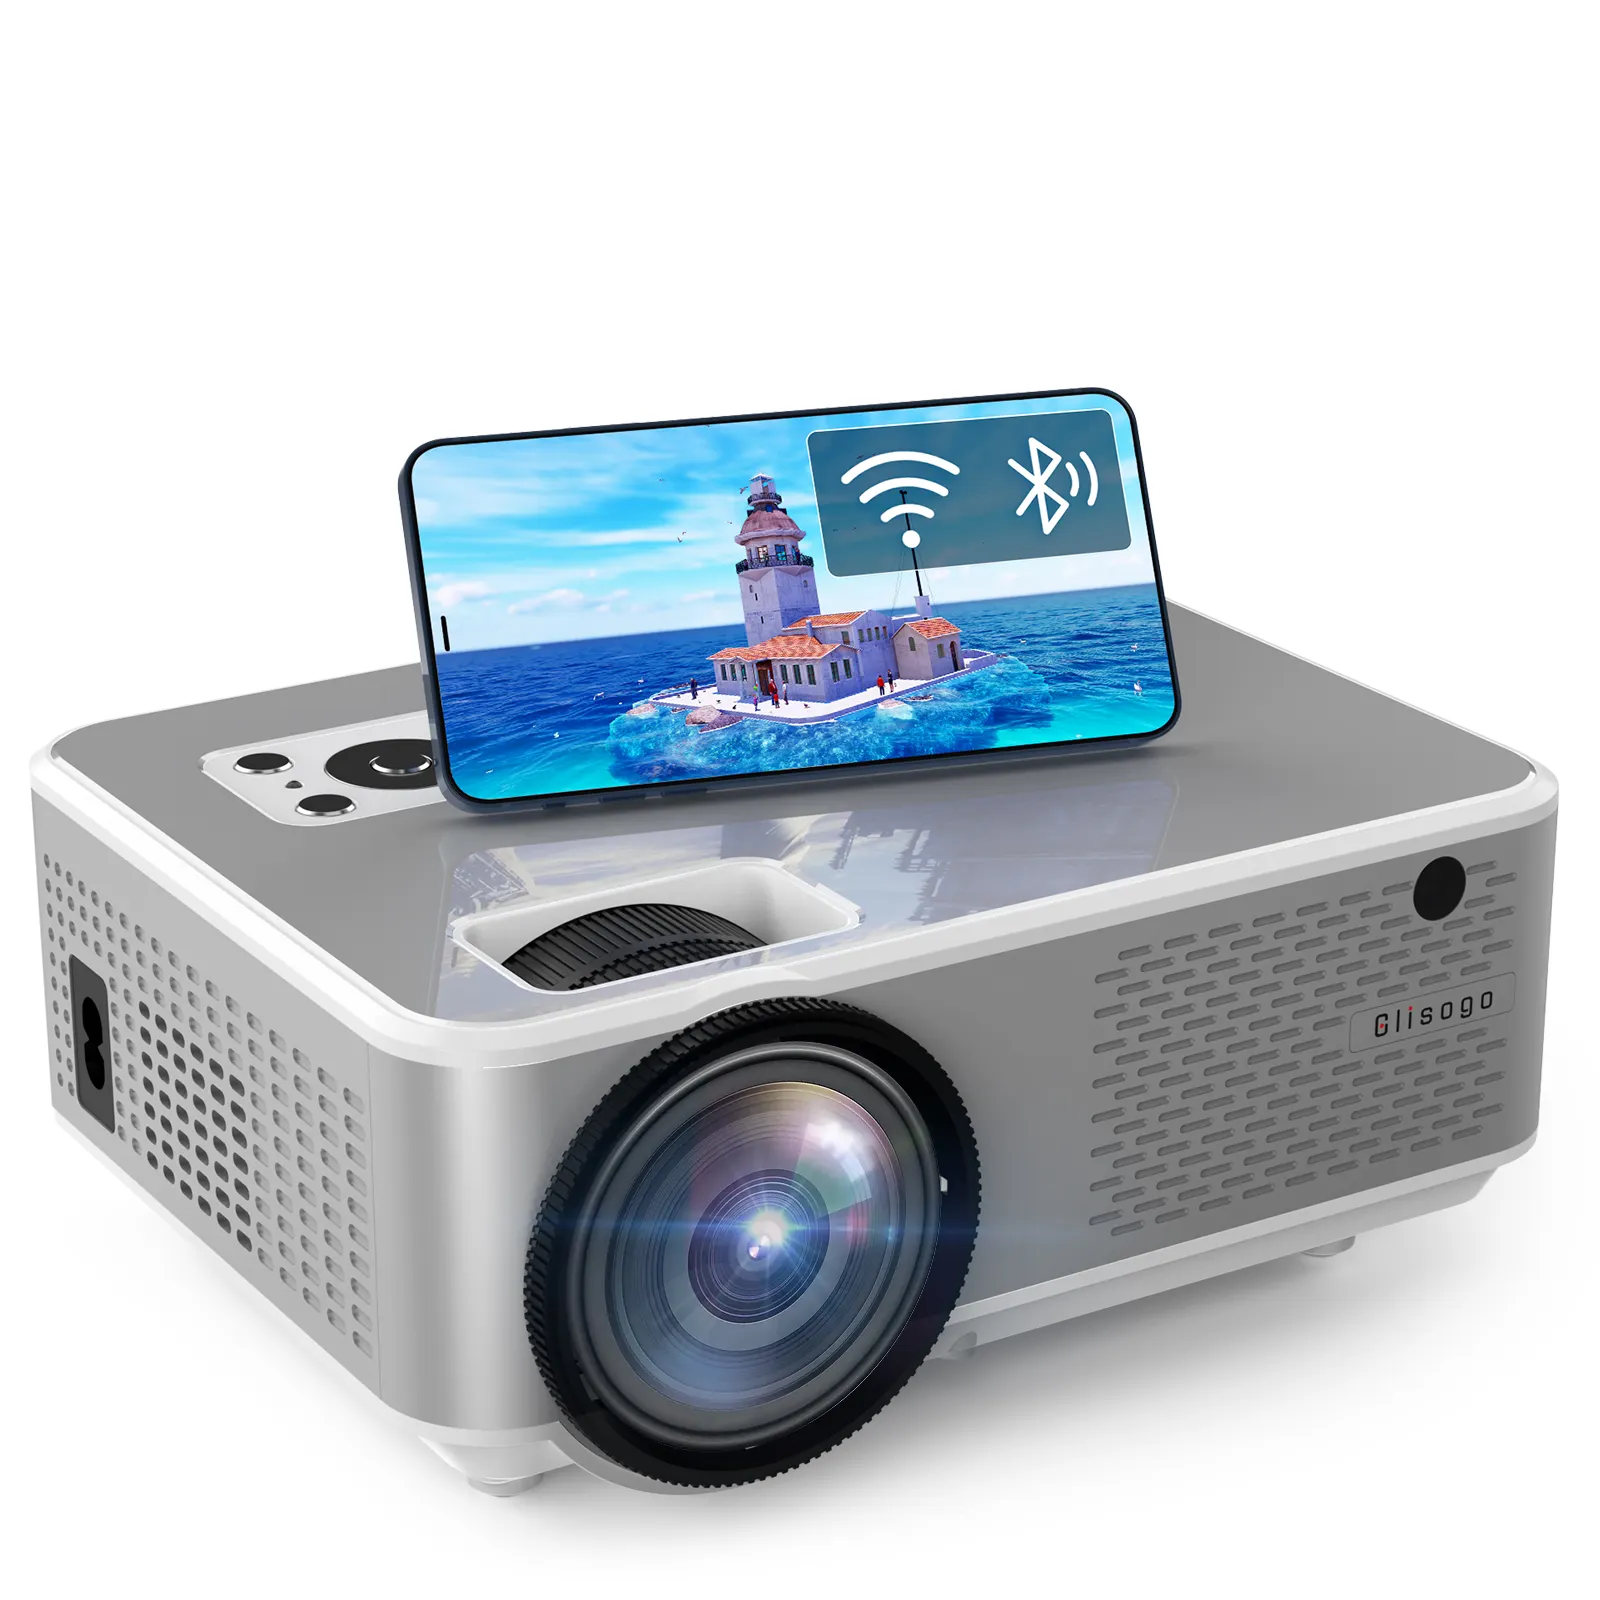 Proyektor portabel Mini C9, proyeksi Mini 4K Video pintar, cermin layar Beamer proyektor Led Video Hd